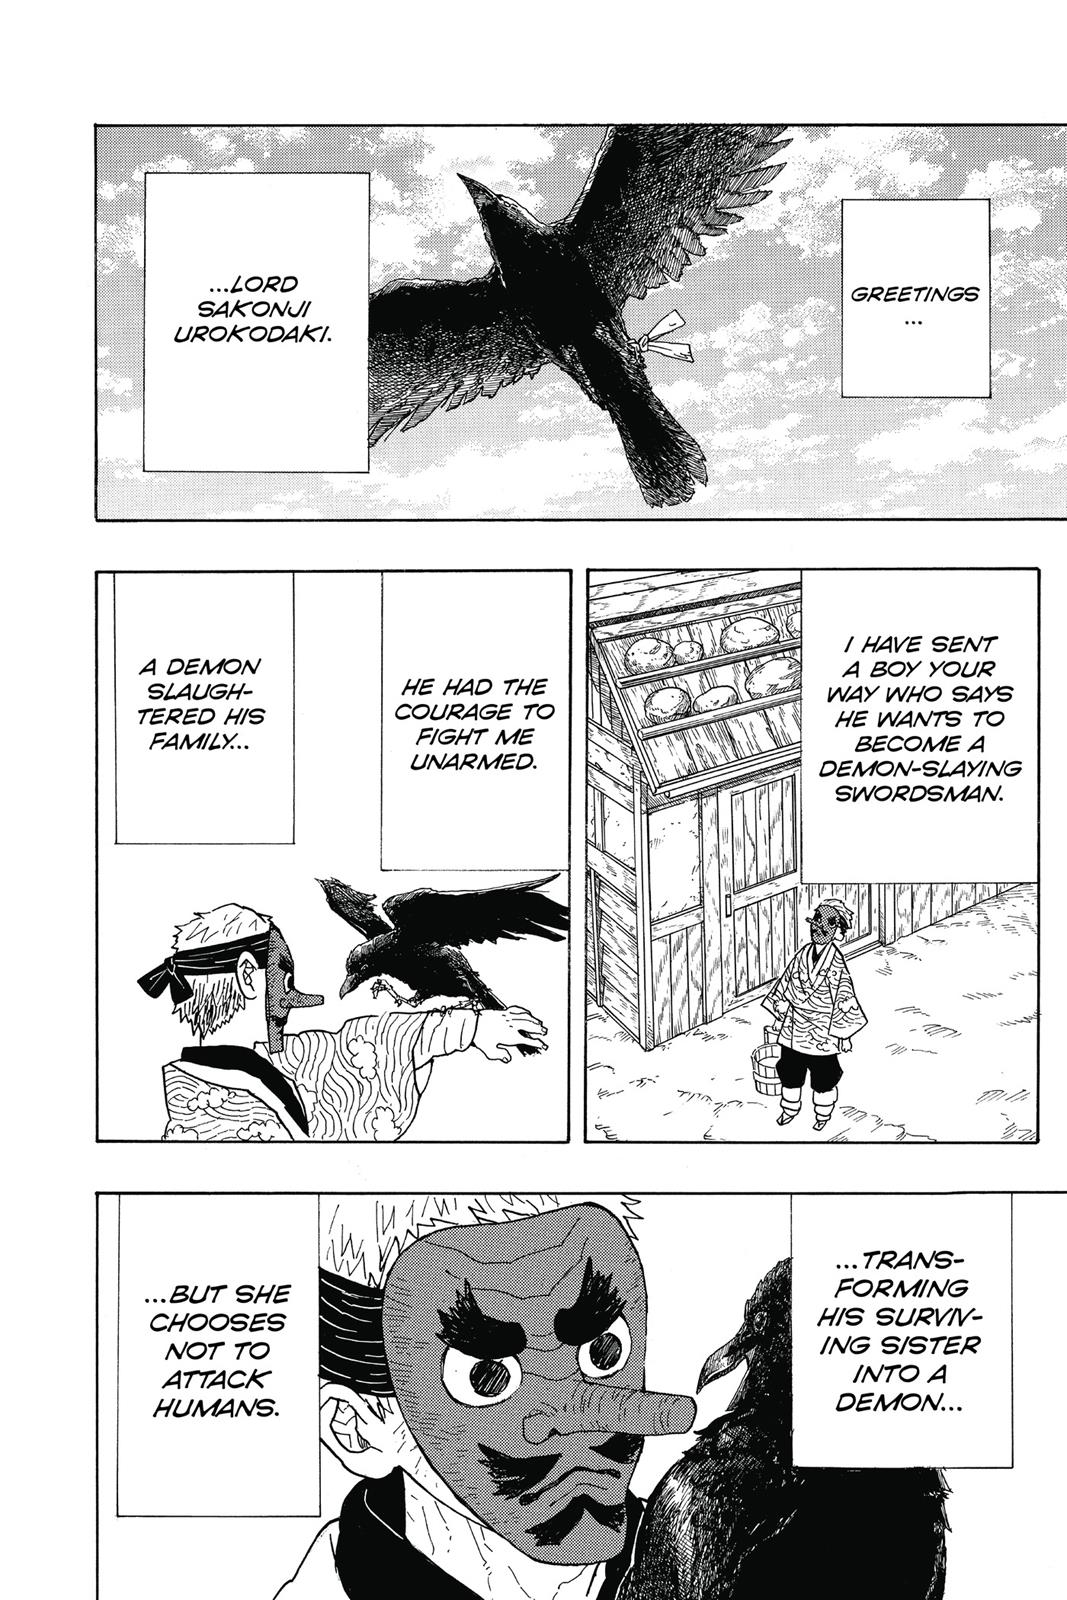 Demon Slayer Manga Manga Chapter - 3 - image 2